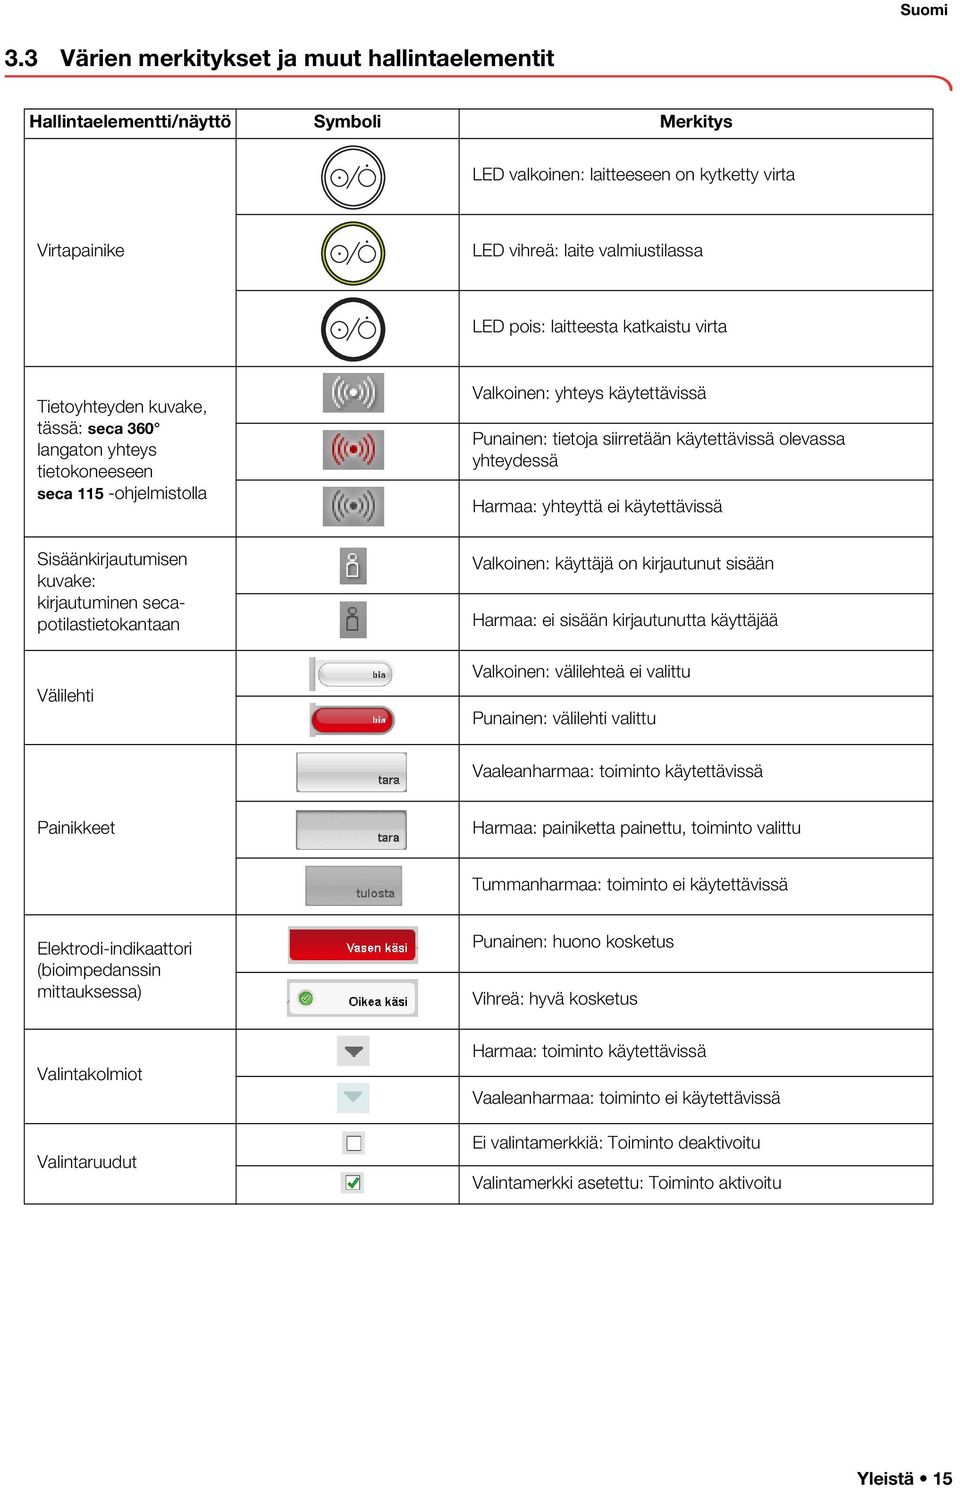 laitteesta katkaistu virta Tietoyhteyden kuvake, tässä: seca 360 langaton yhteys tietokoneeseen seca 115 -ohjelmistolla Valkoinen: yhteys käytettävissä Punainen: tietoja siirretään käytettävissä